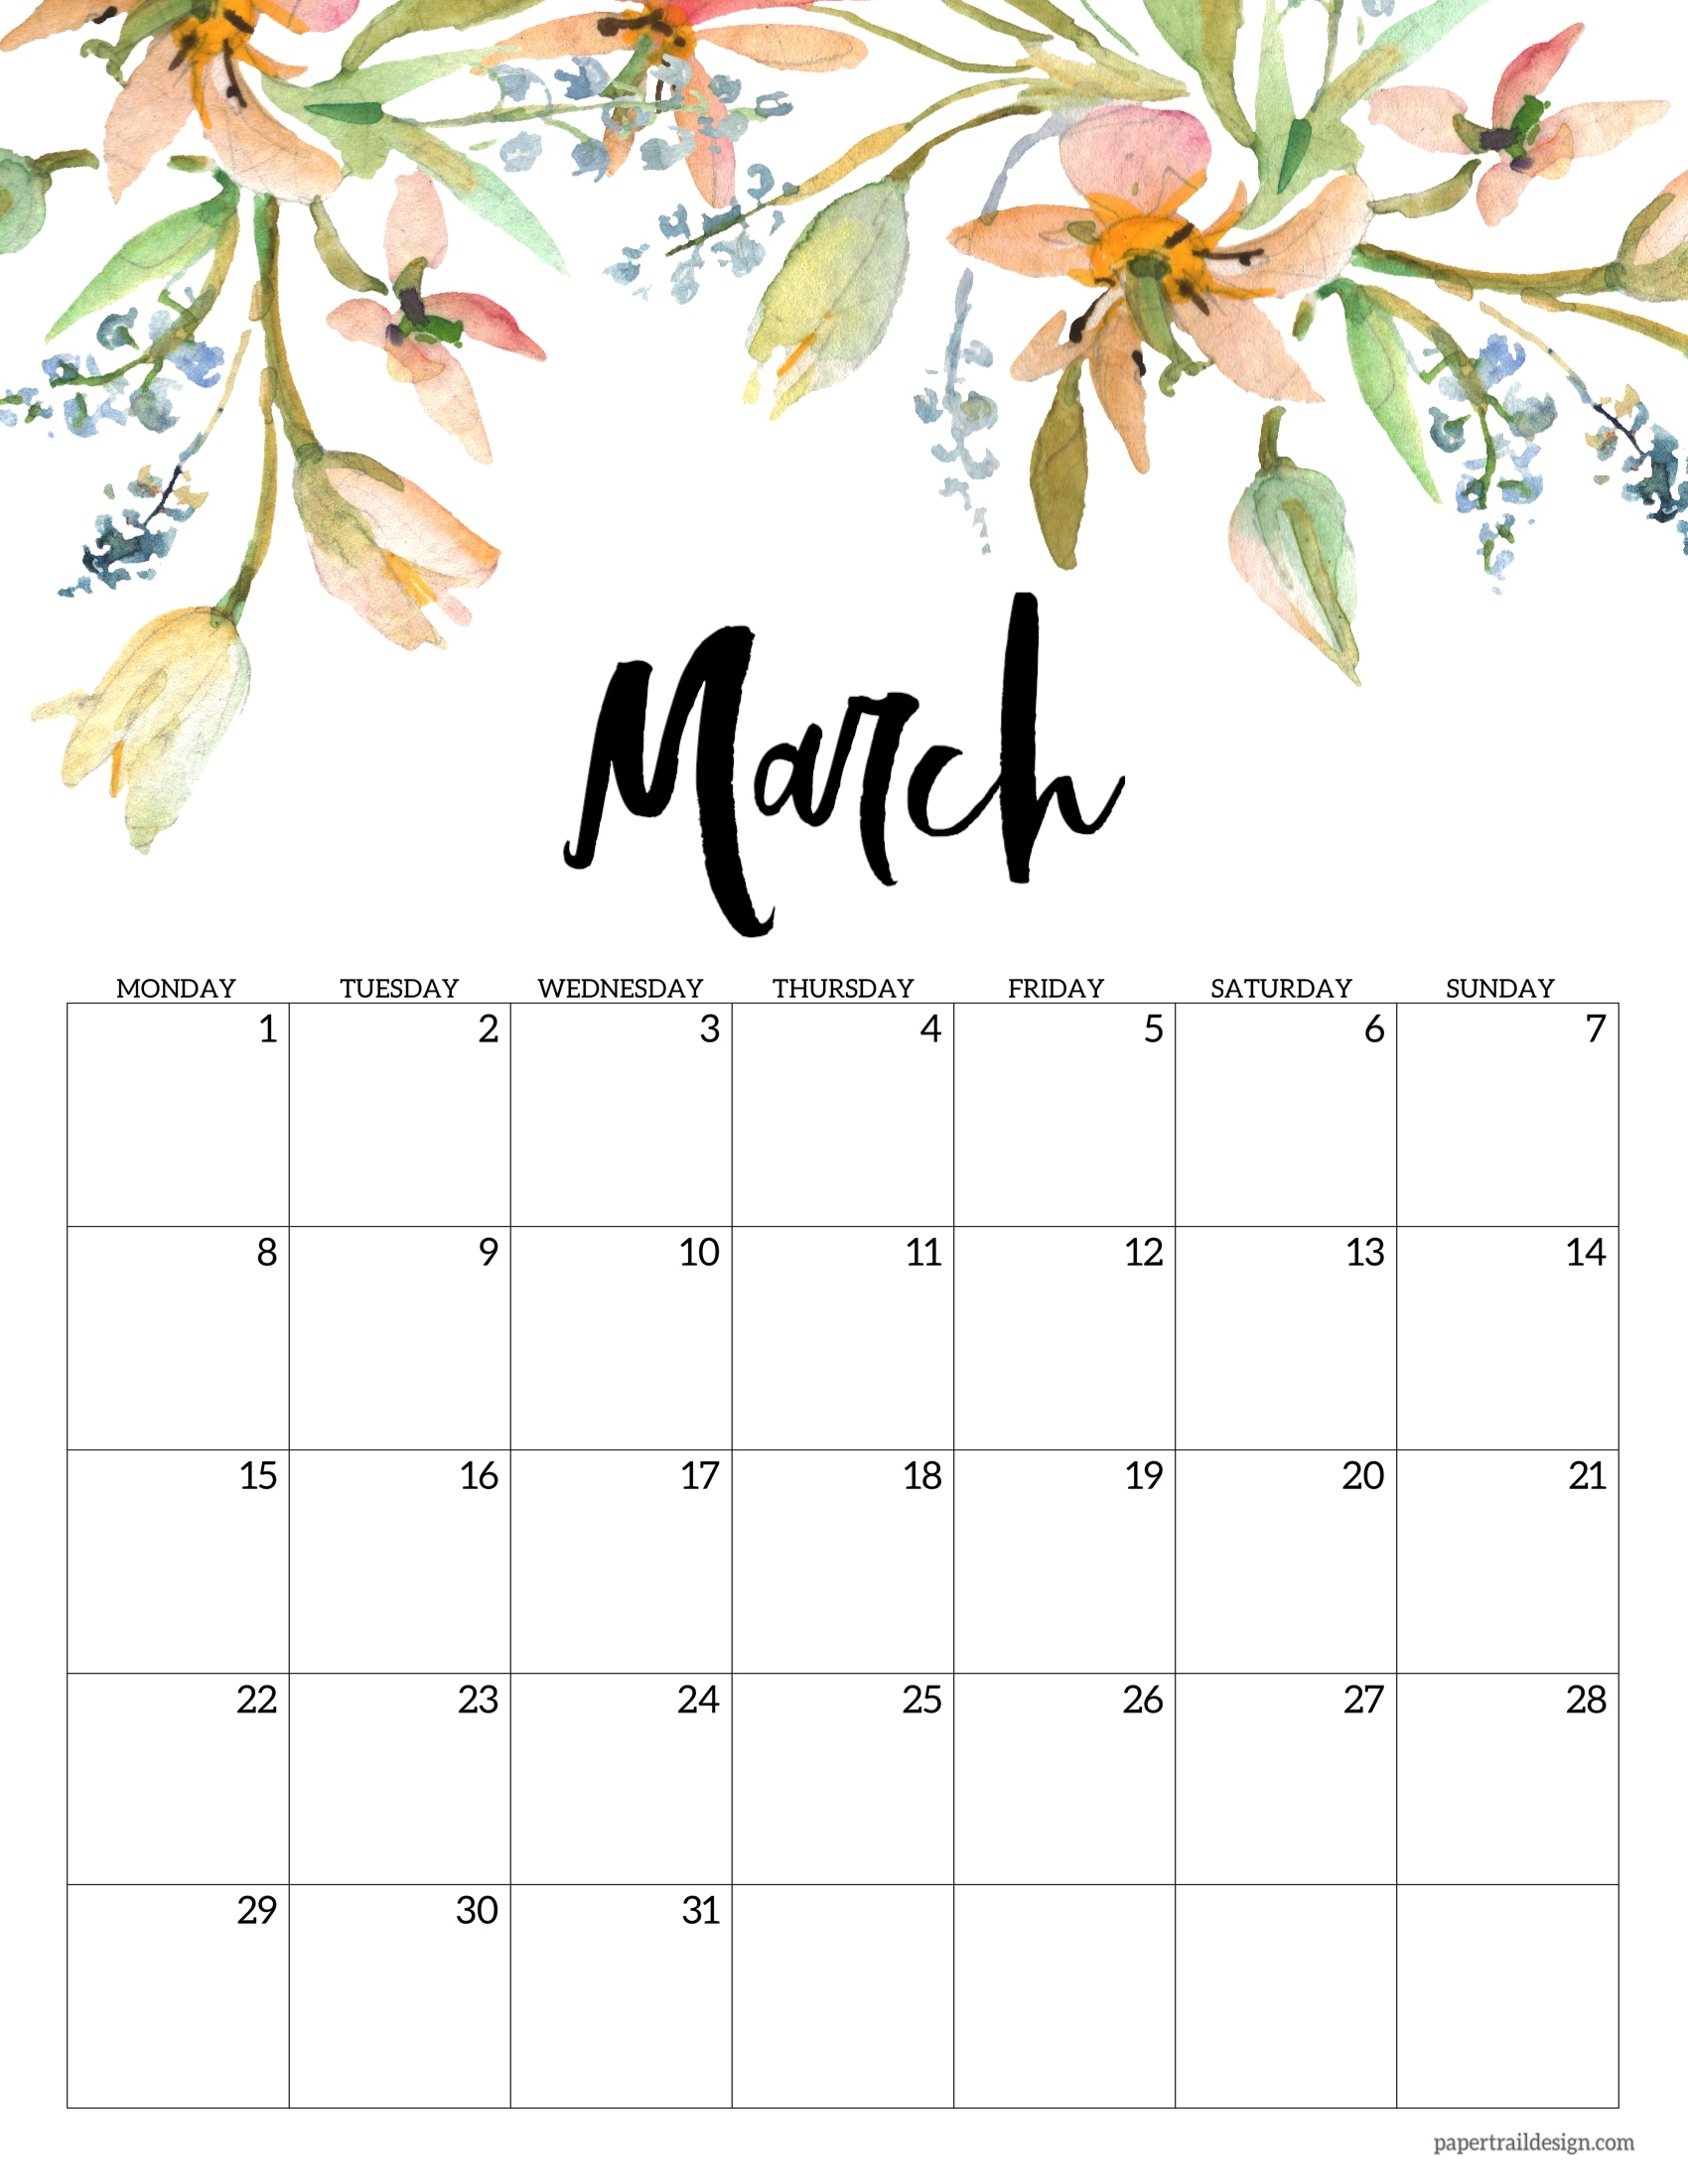 Free Printable 2021 Floral Calendar - Monday Start | Paper Trail Design December 2021 Calendar Floral